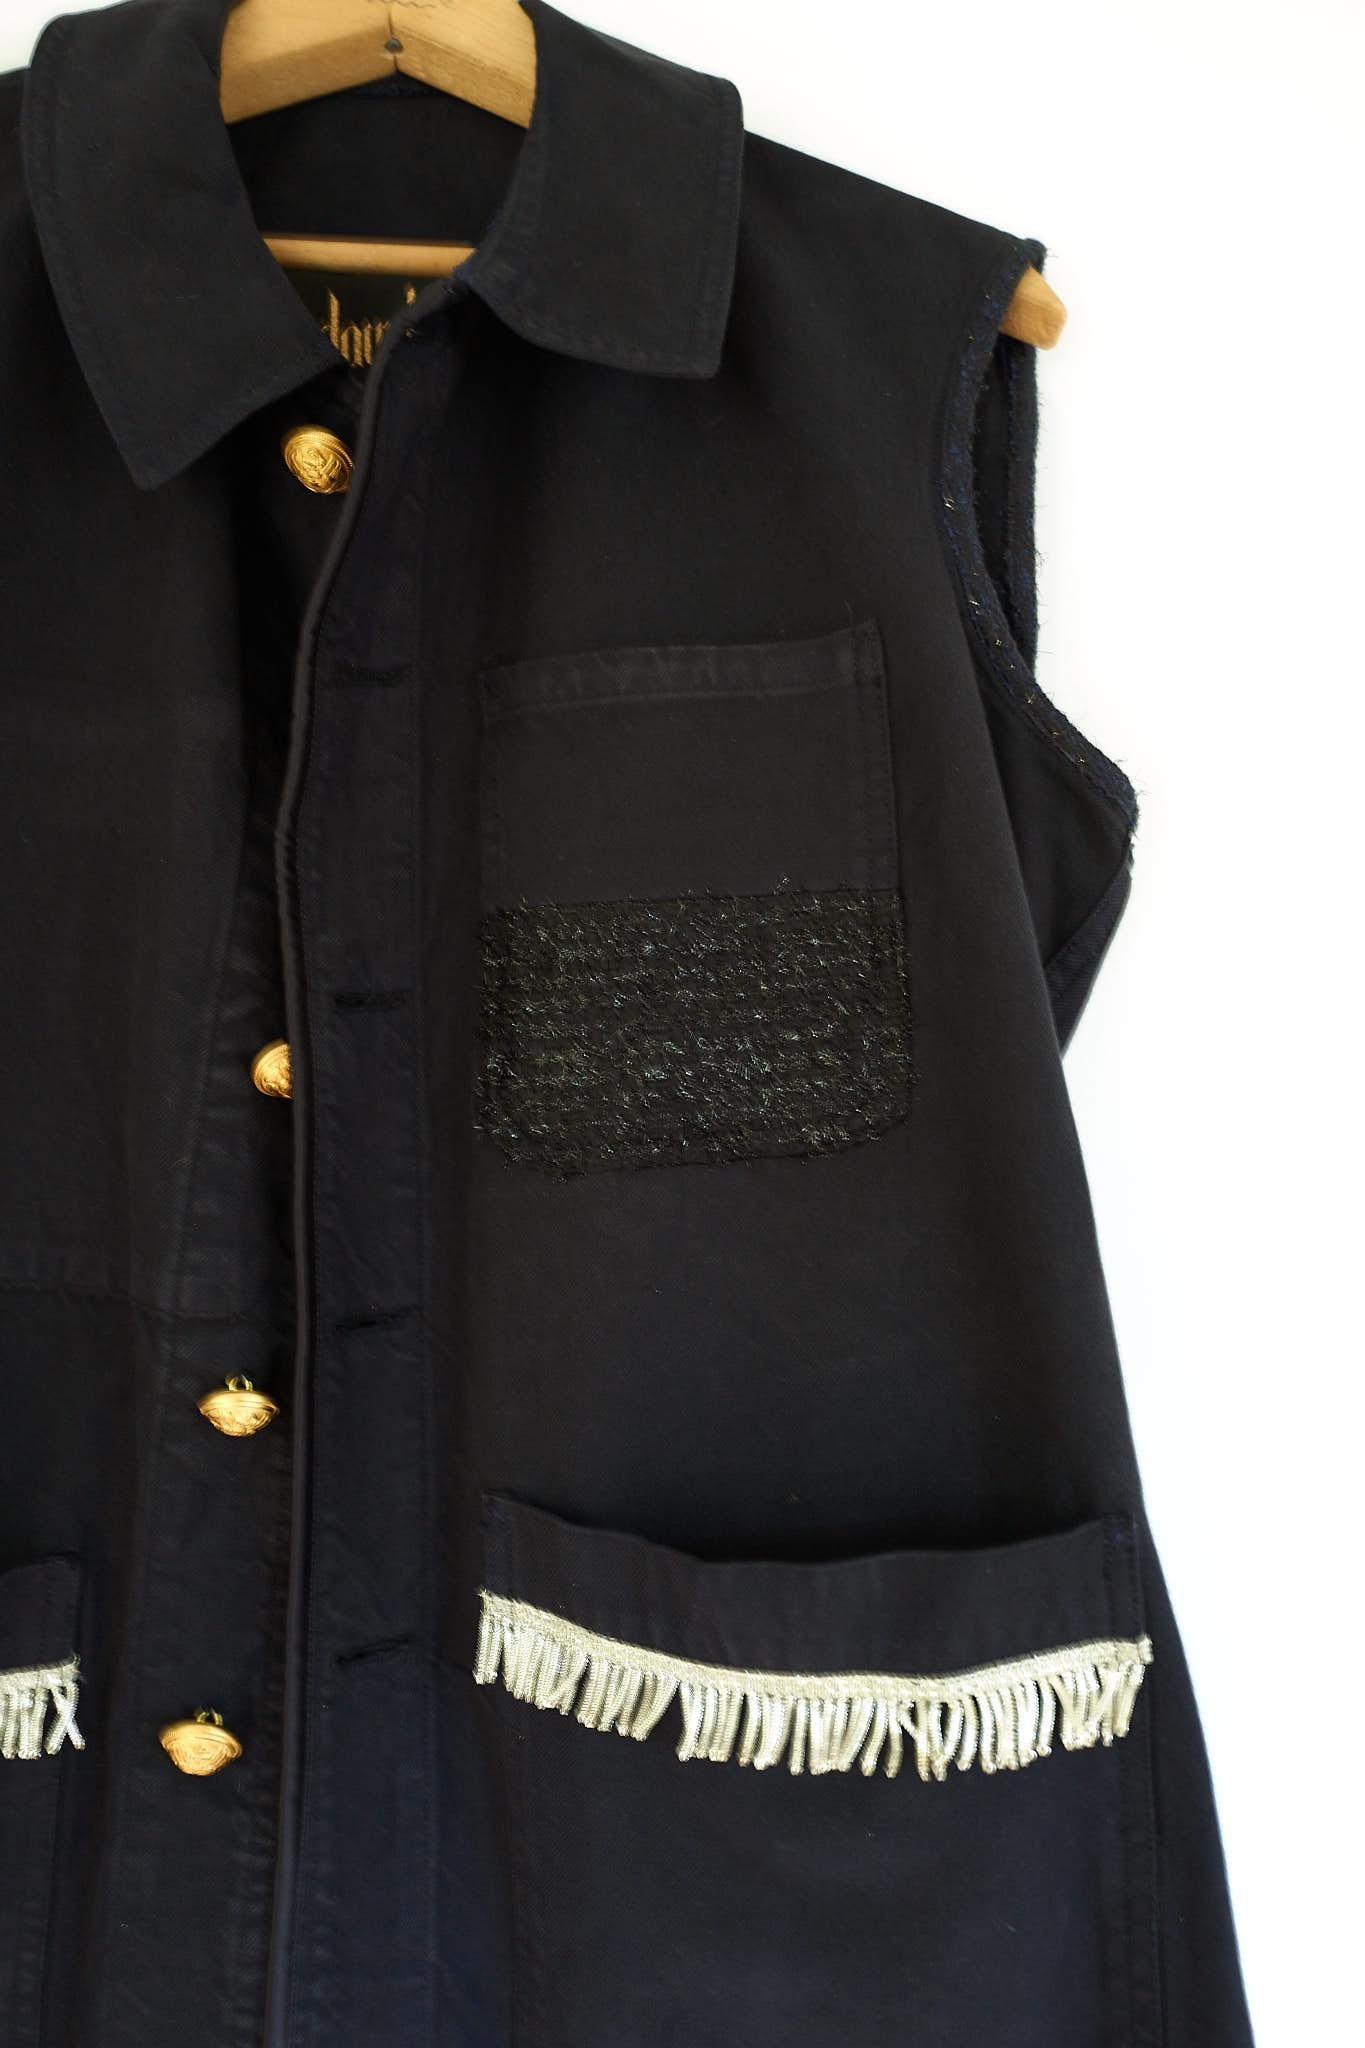 Women's Embellished Silver Fringe Sleeveless Jacket Vest Black One of a kind J Dauphin